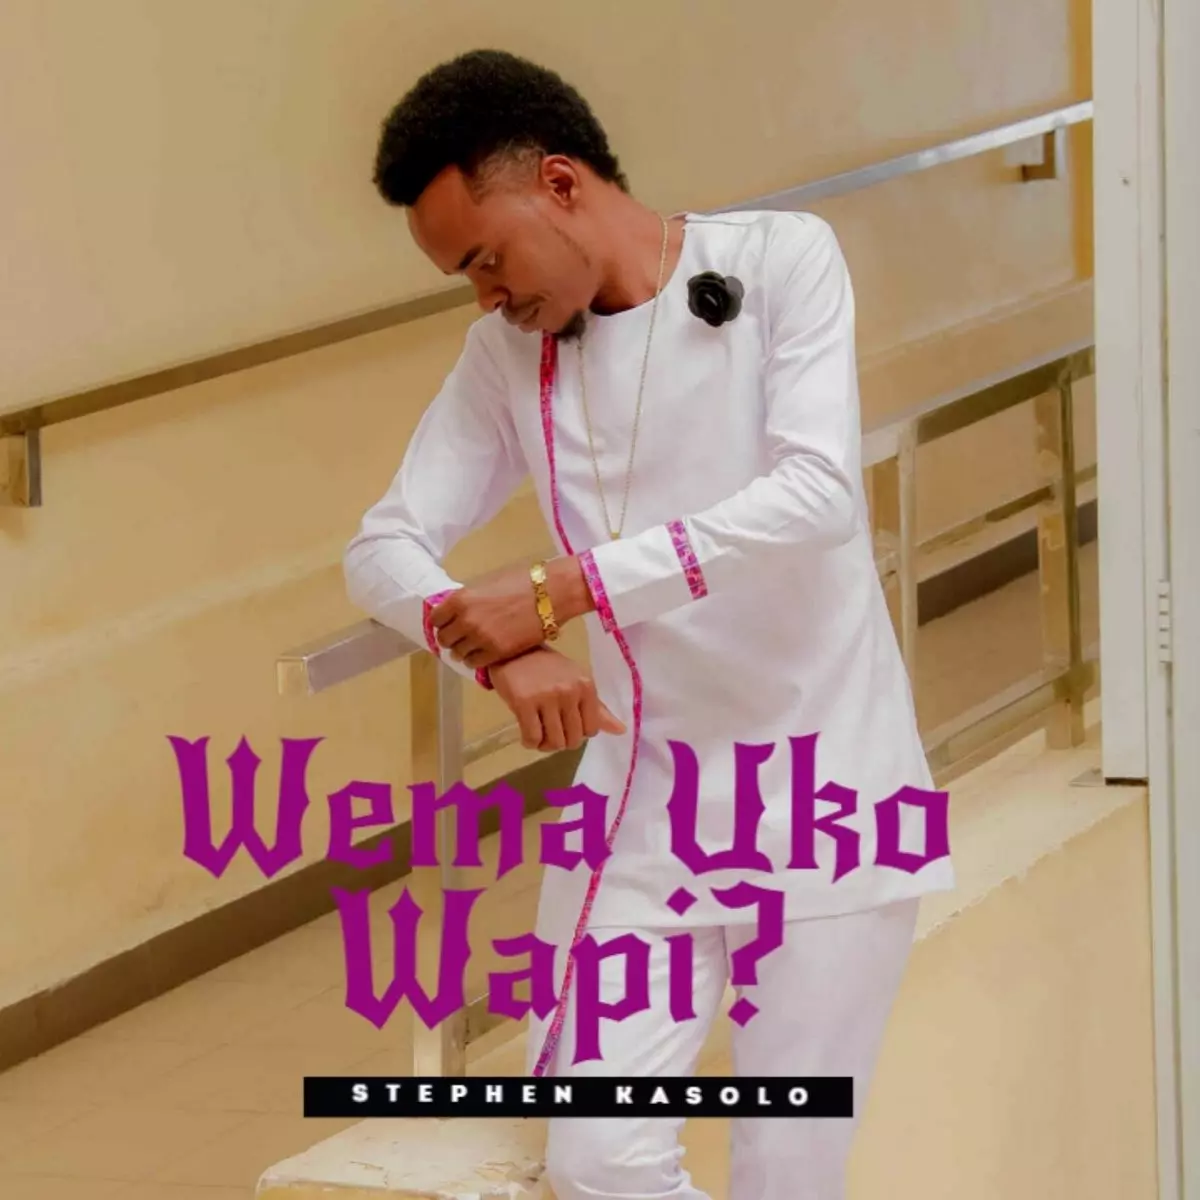 Wema Uko Wapi? - Single by Stephen Kasolo on Apple Music